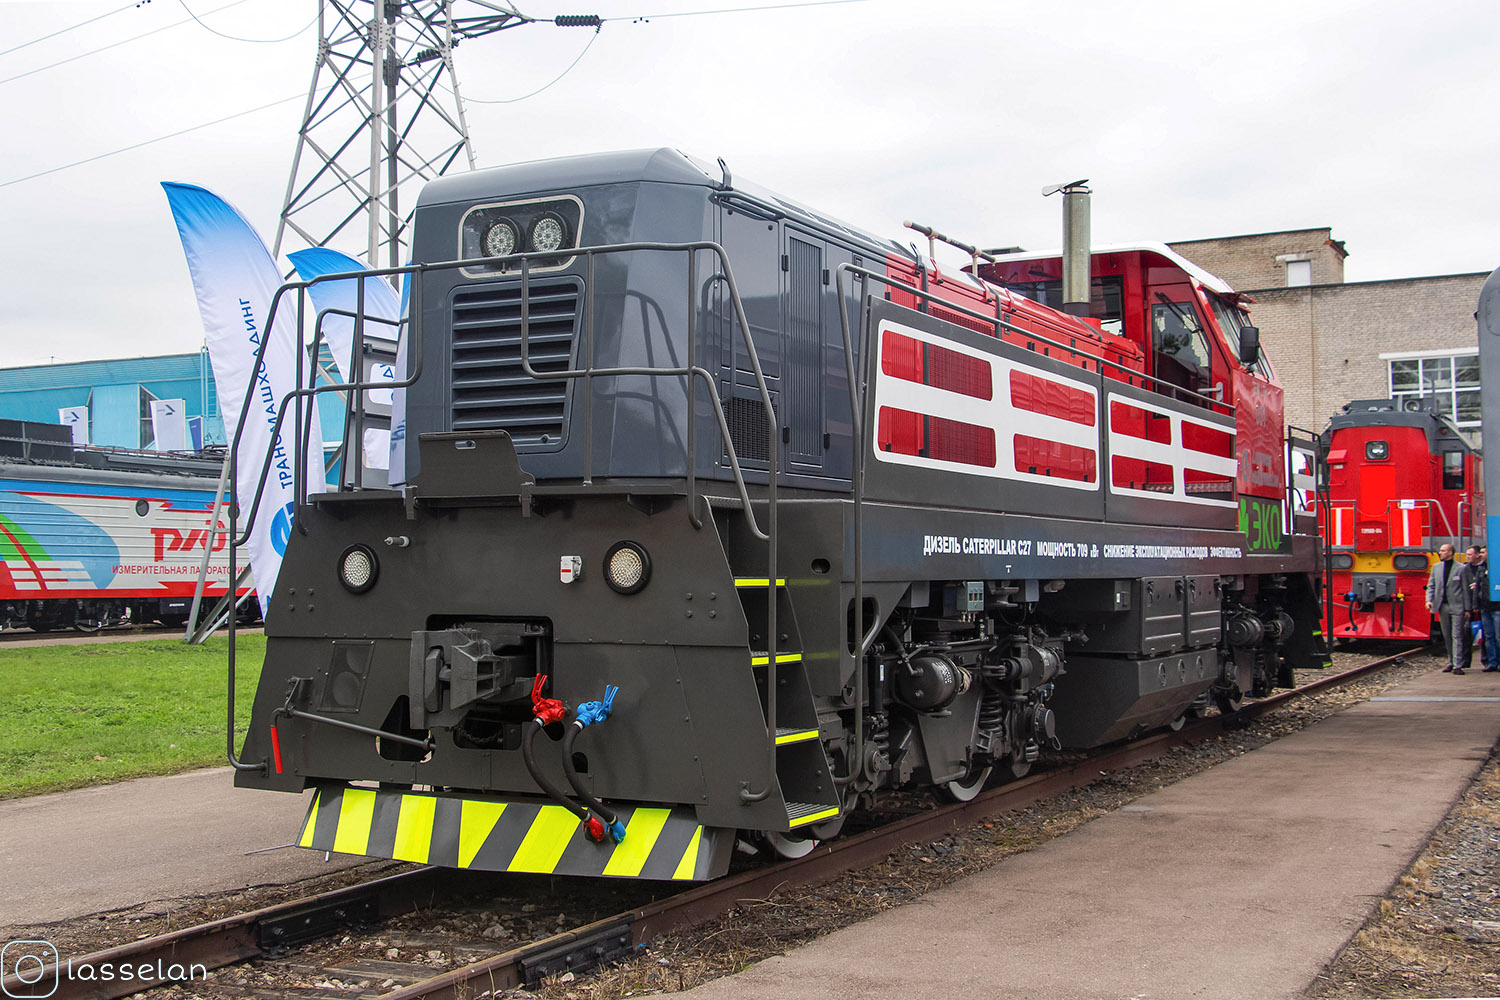 TEM-LTH-001; Московская железная дорога — IV Международный железнодорожный салон "ЭКСПО 1520" 2013